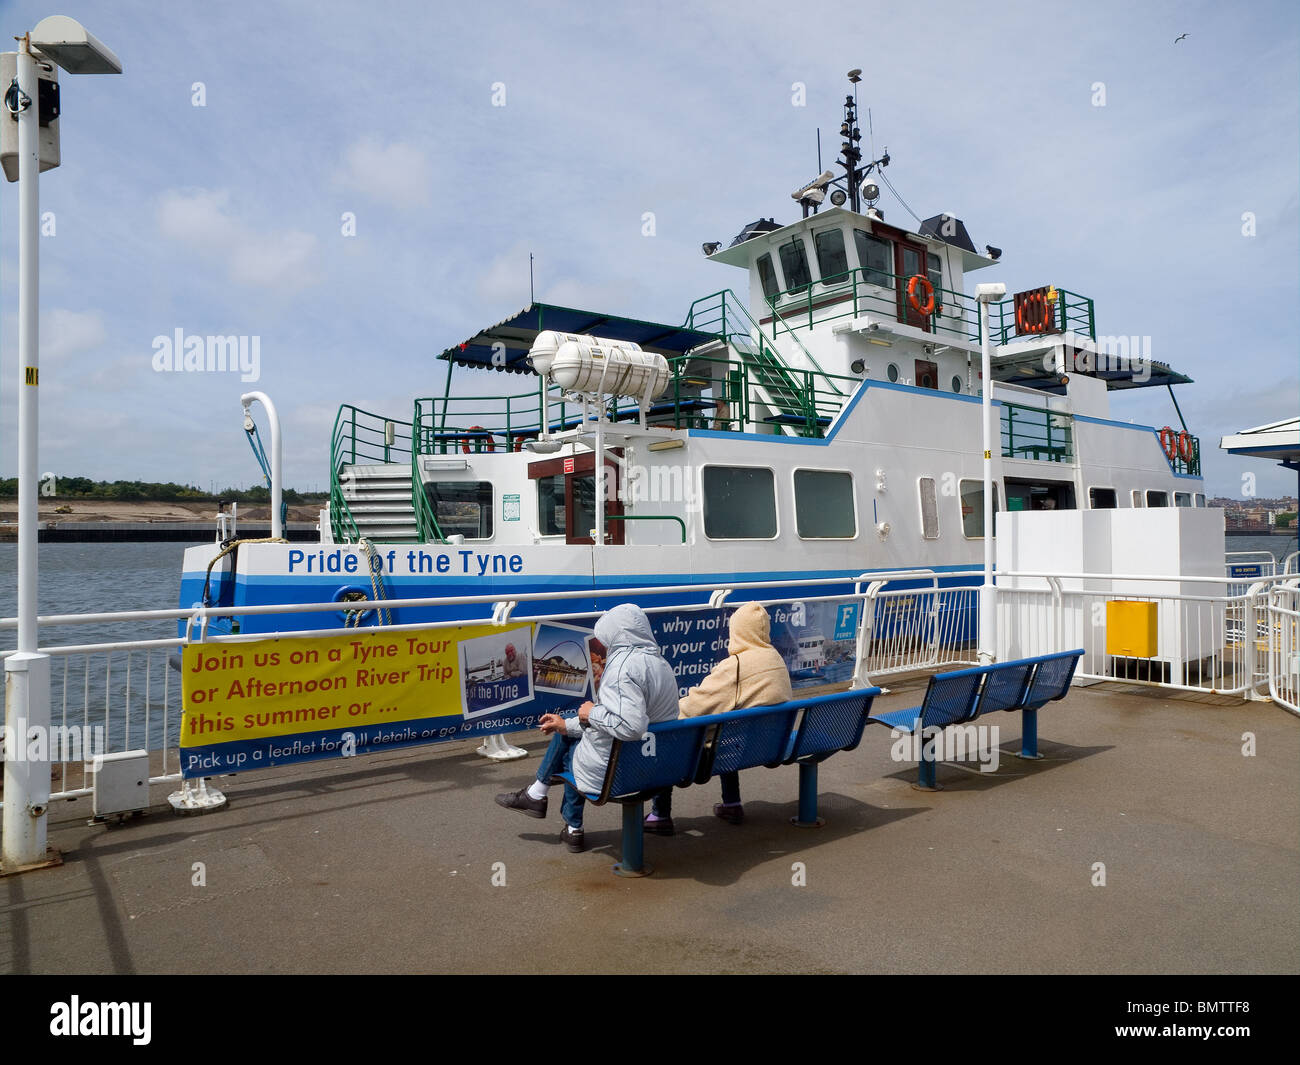 Un bateau au terminal de ferry les protections de transport de passagers sur un service régulier de l'autre côté de la rivière Tyne Banque D'Images